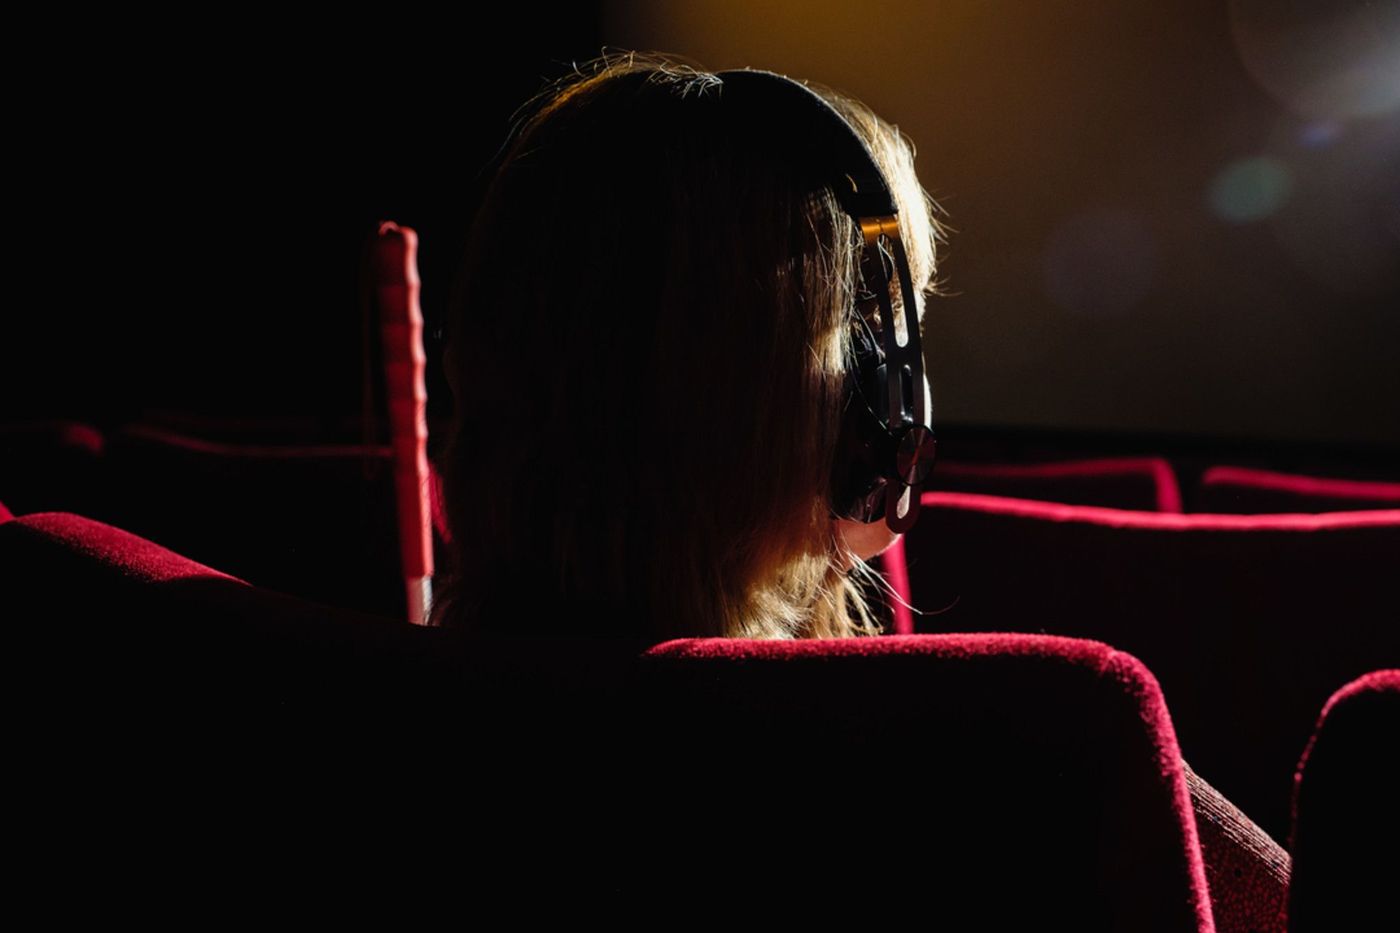 Das Foto zeigt eine Person von hinten, die im roten Kinosessel sitzt. Sie trägt einen Kopfhörer. Neben ihr ist ein Stab aufgestellt.